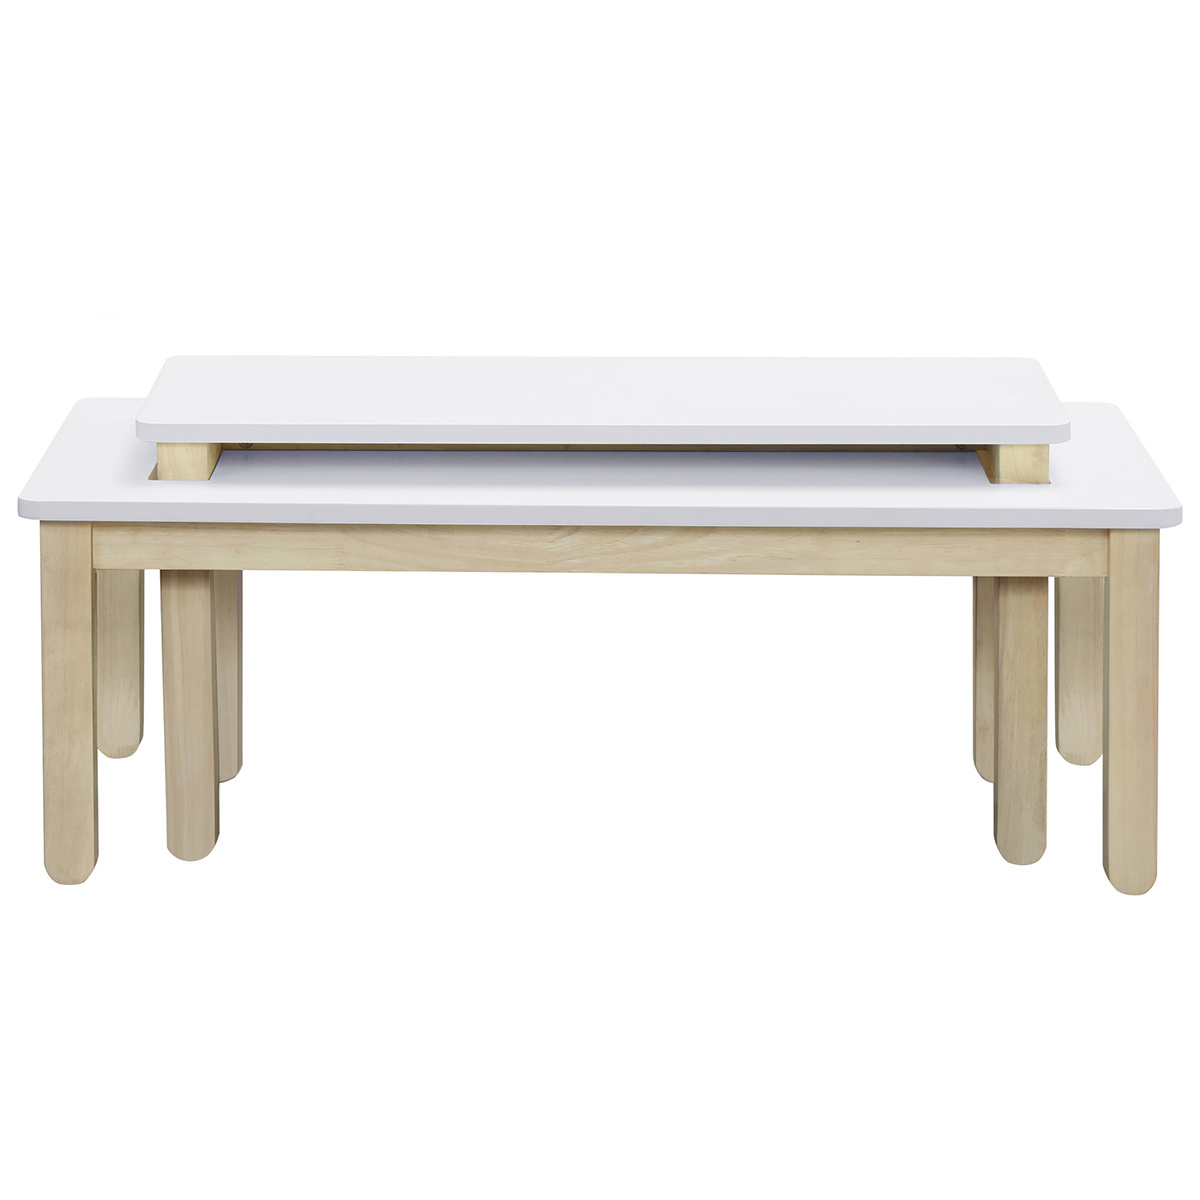 Table basse scandinave avec banc intégré blanc et bois clair L110 cm CYBEL vue1